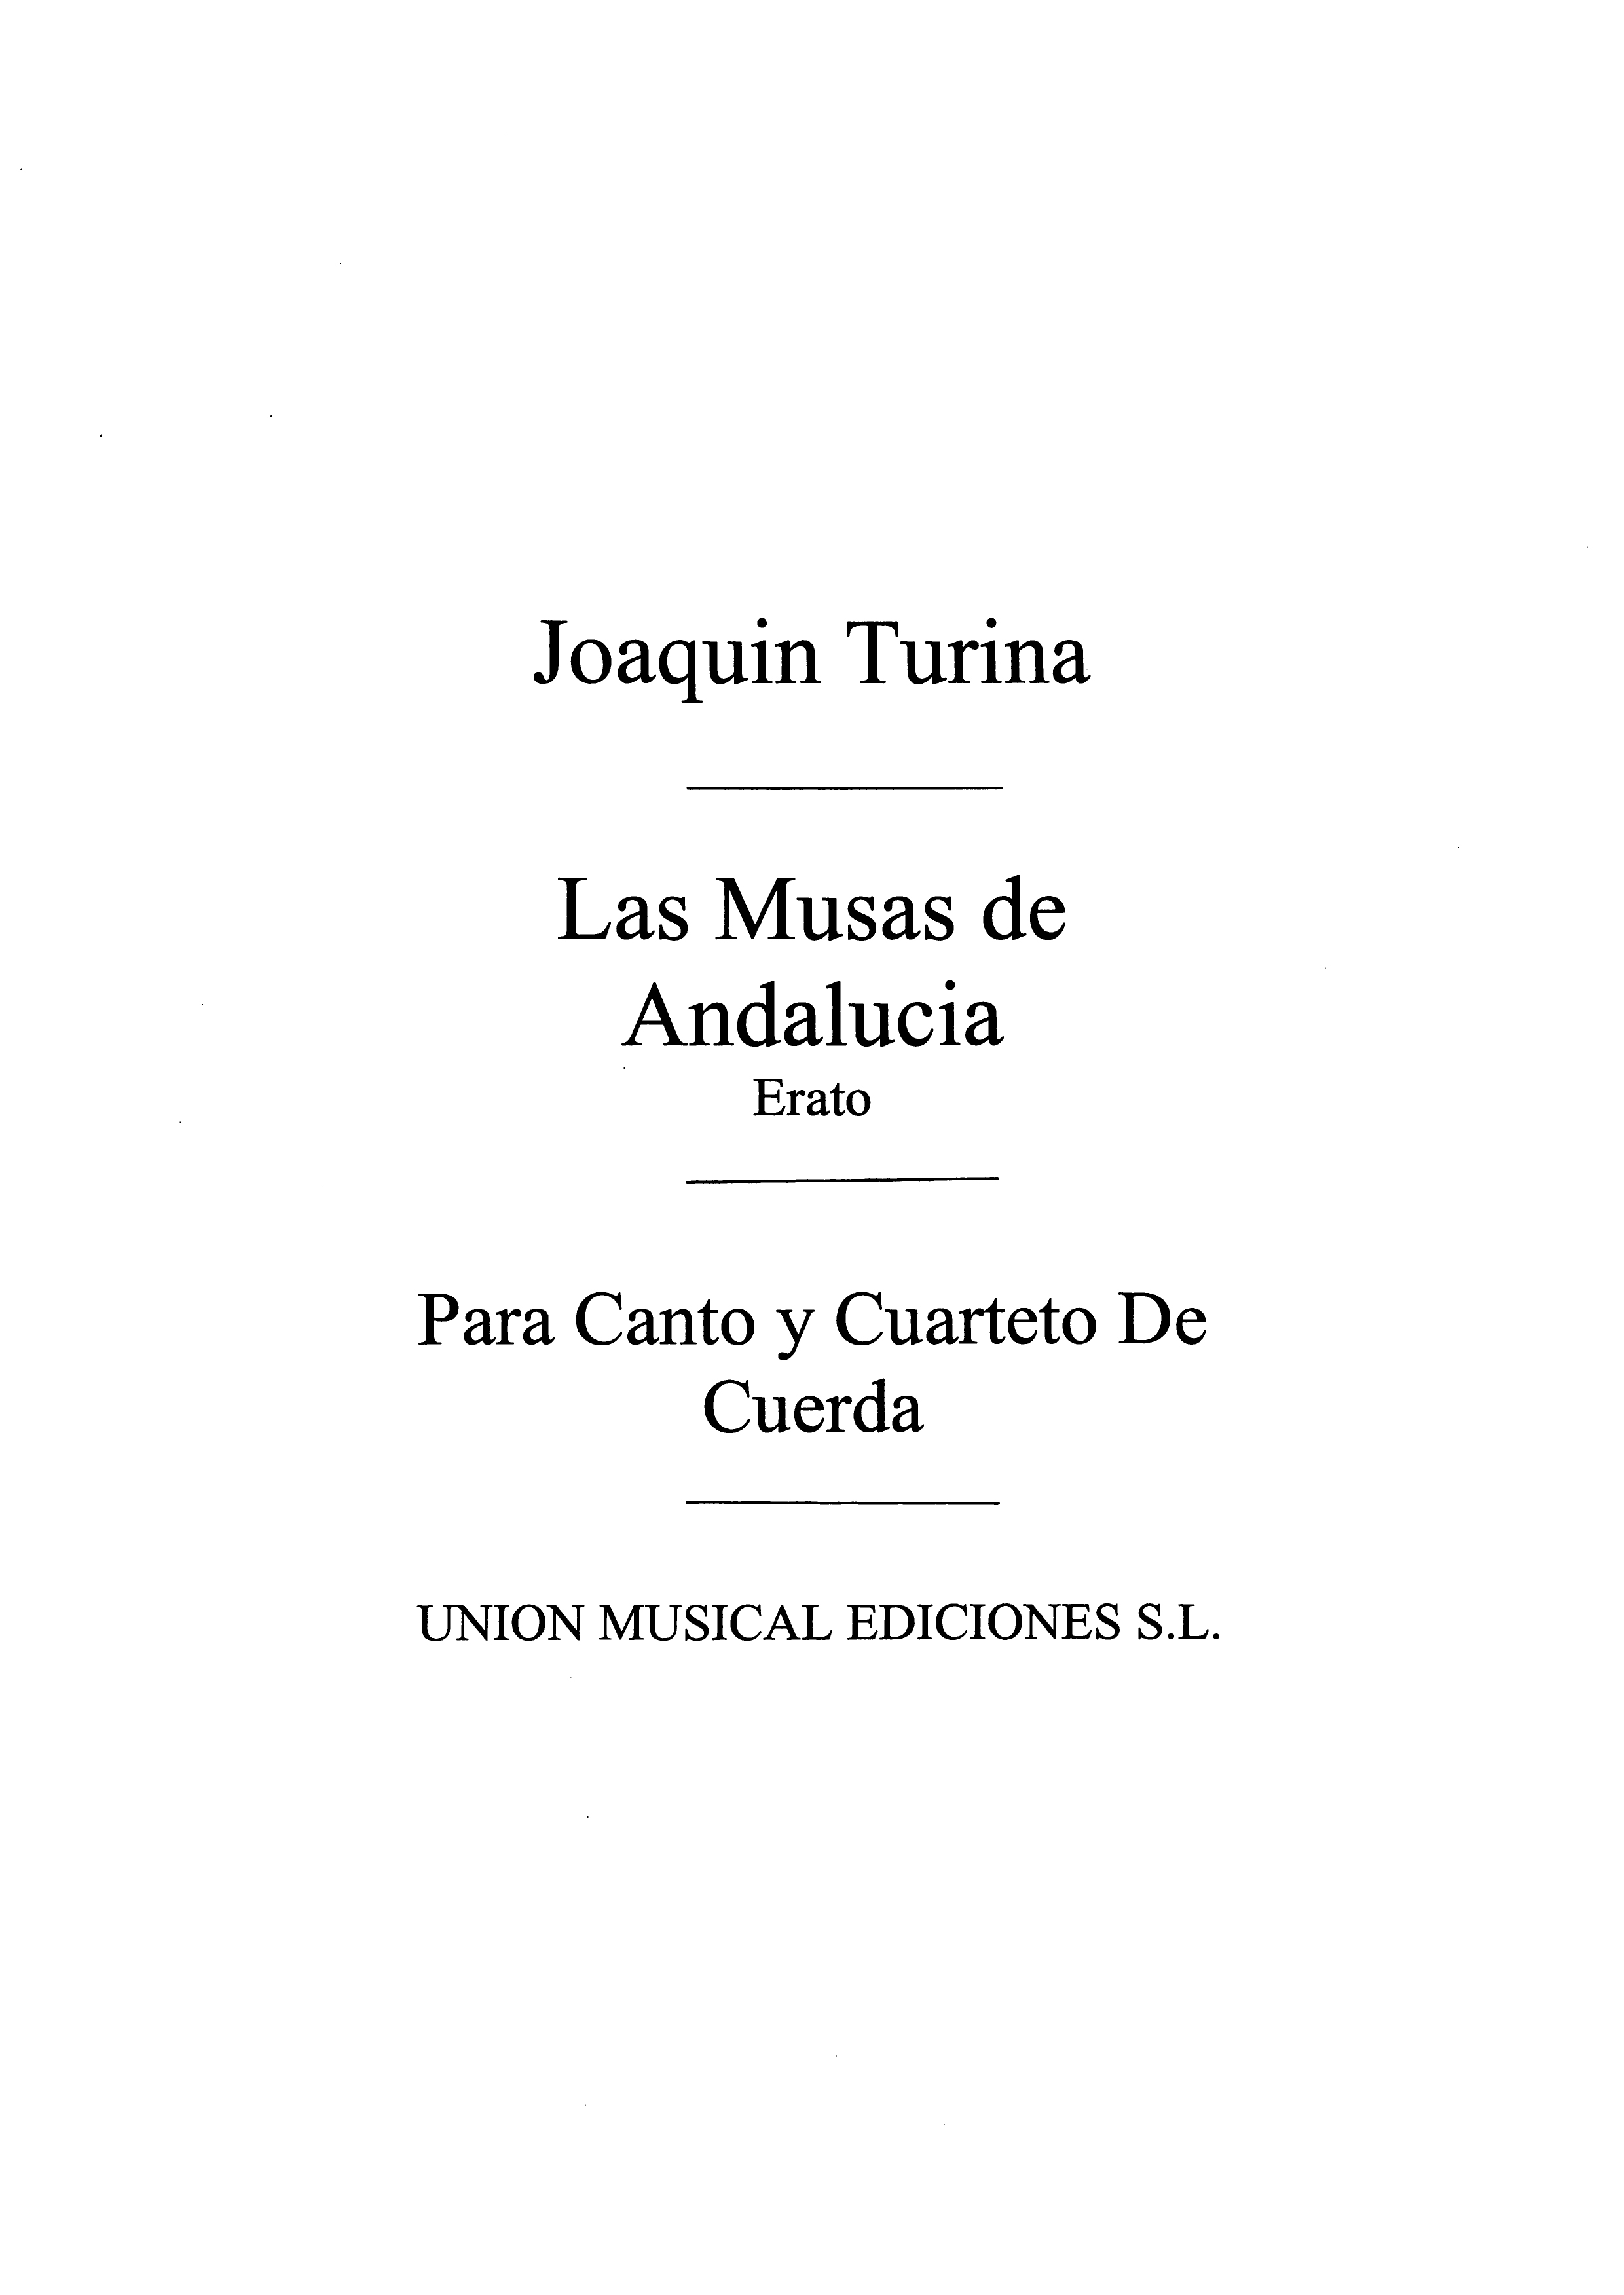 Joaqun Turina: Musas De Andalucia No.6 Erato